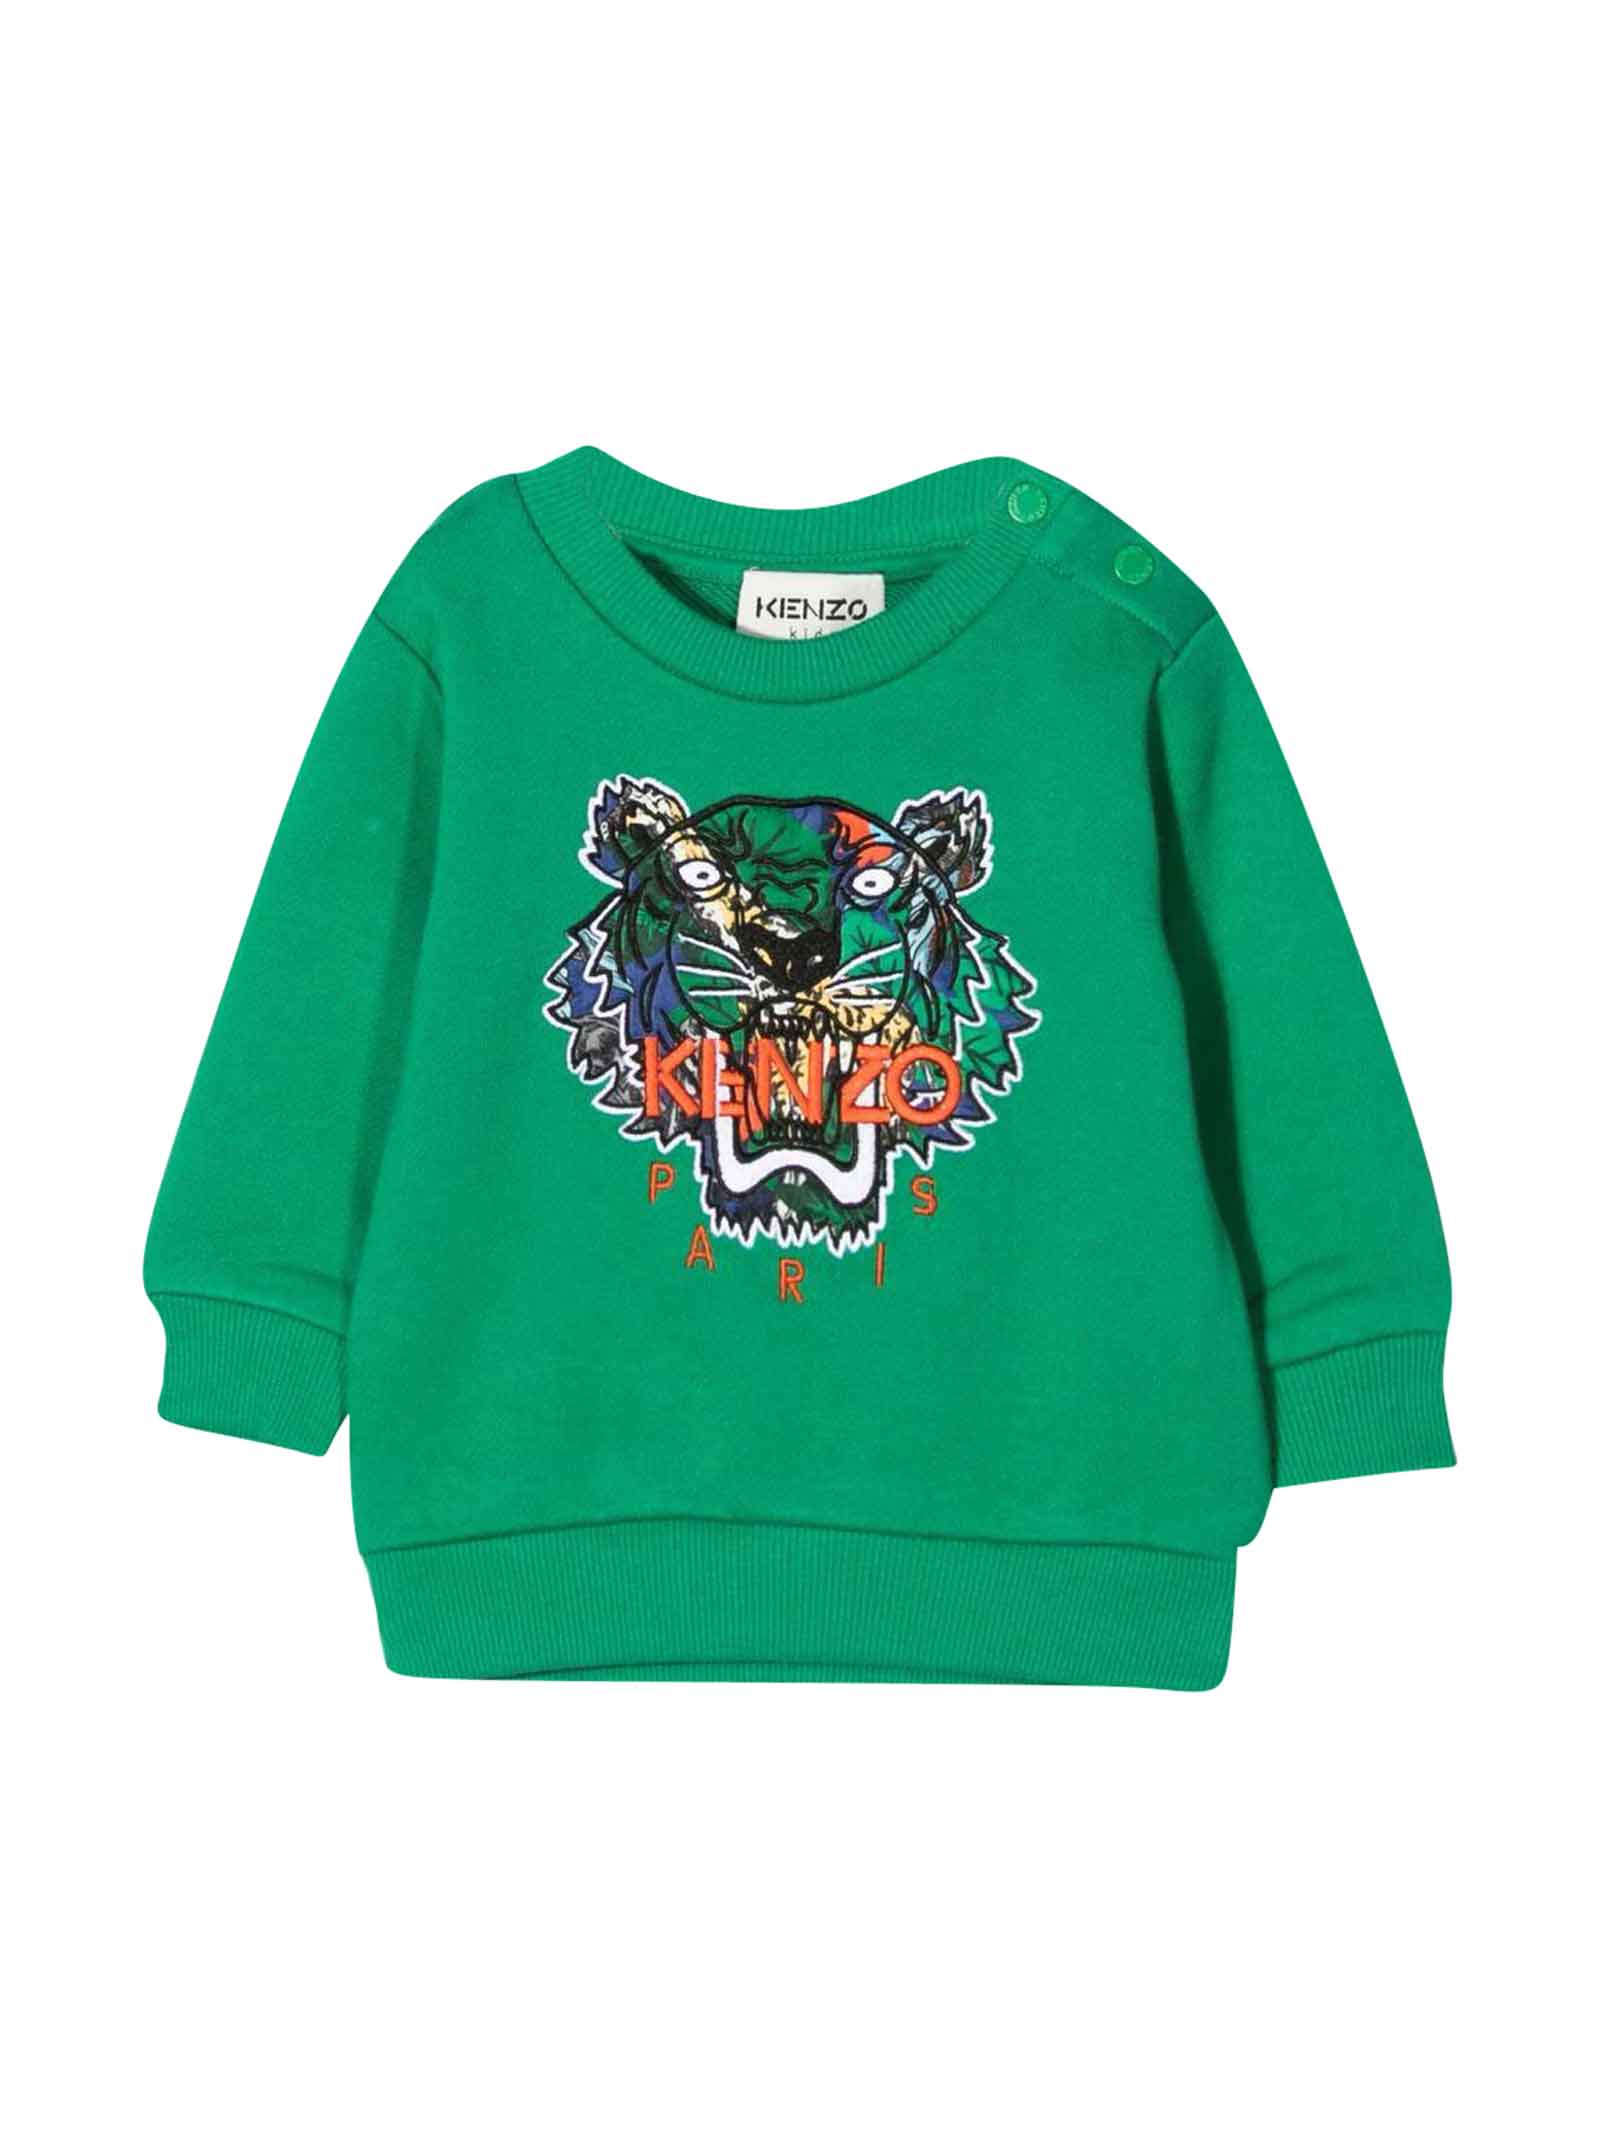 Kenzo Kids Green Sweatshirt Baby Unisex